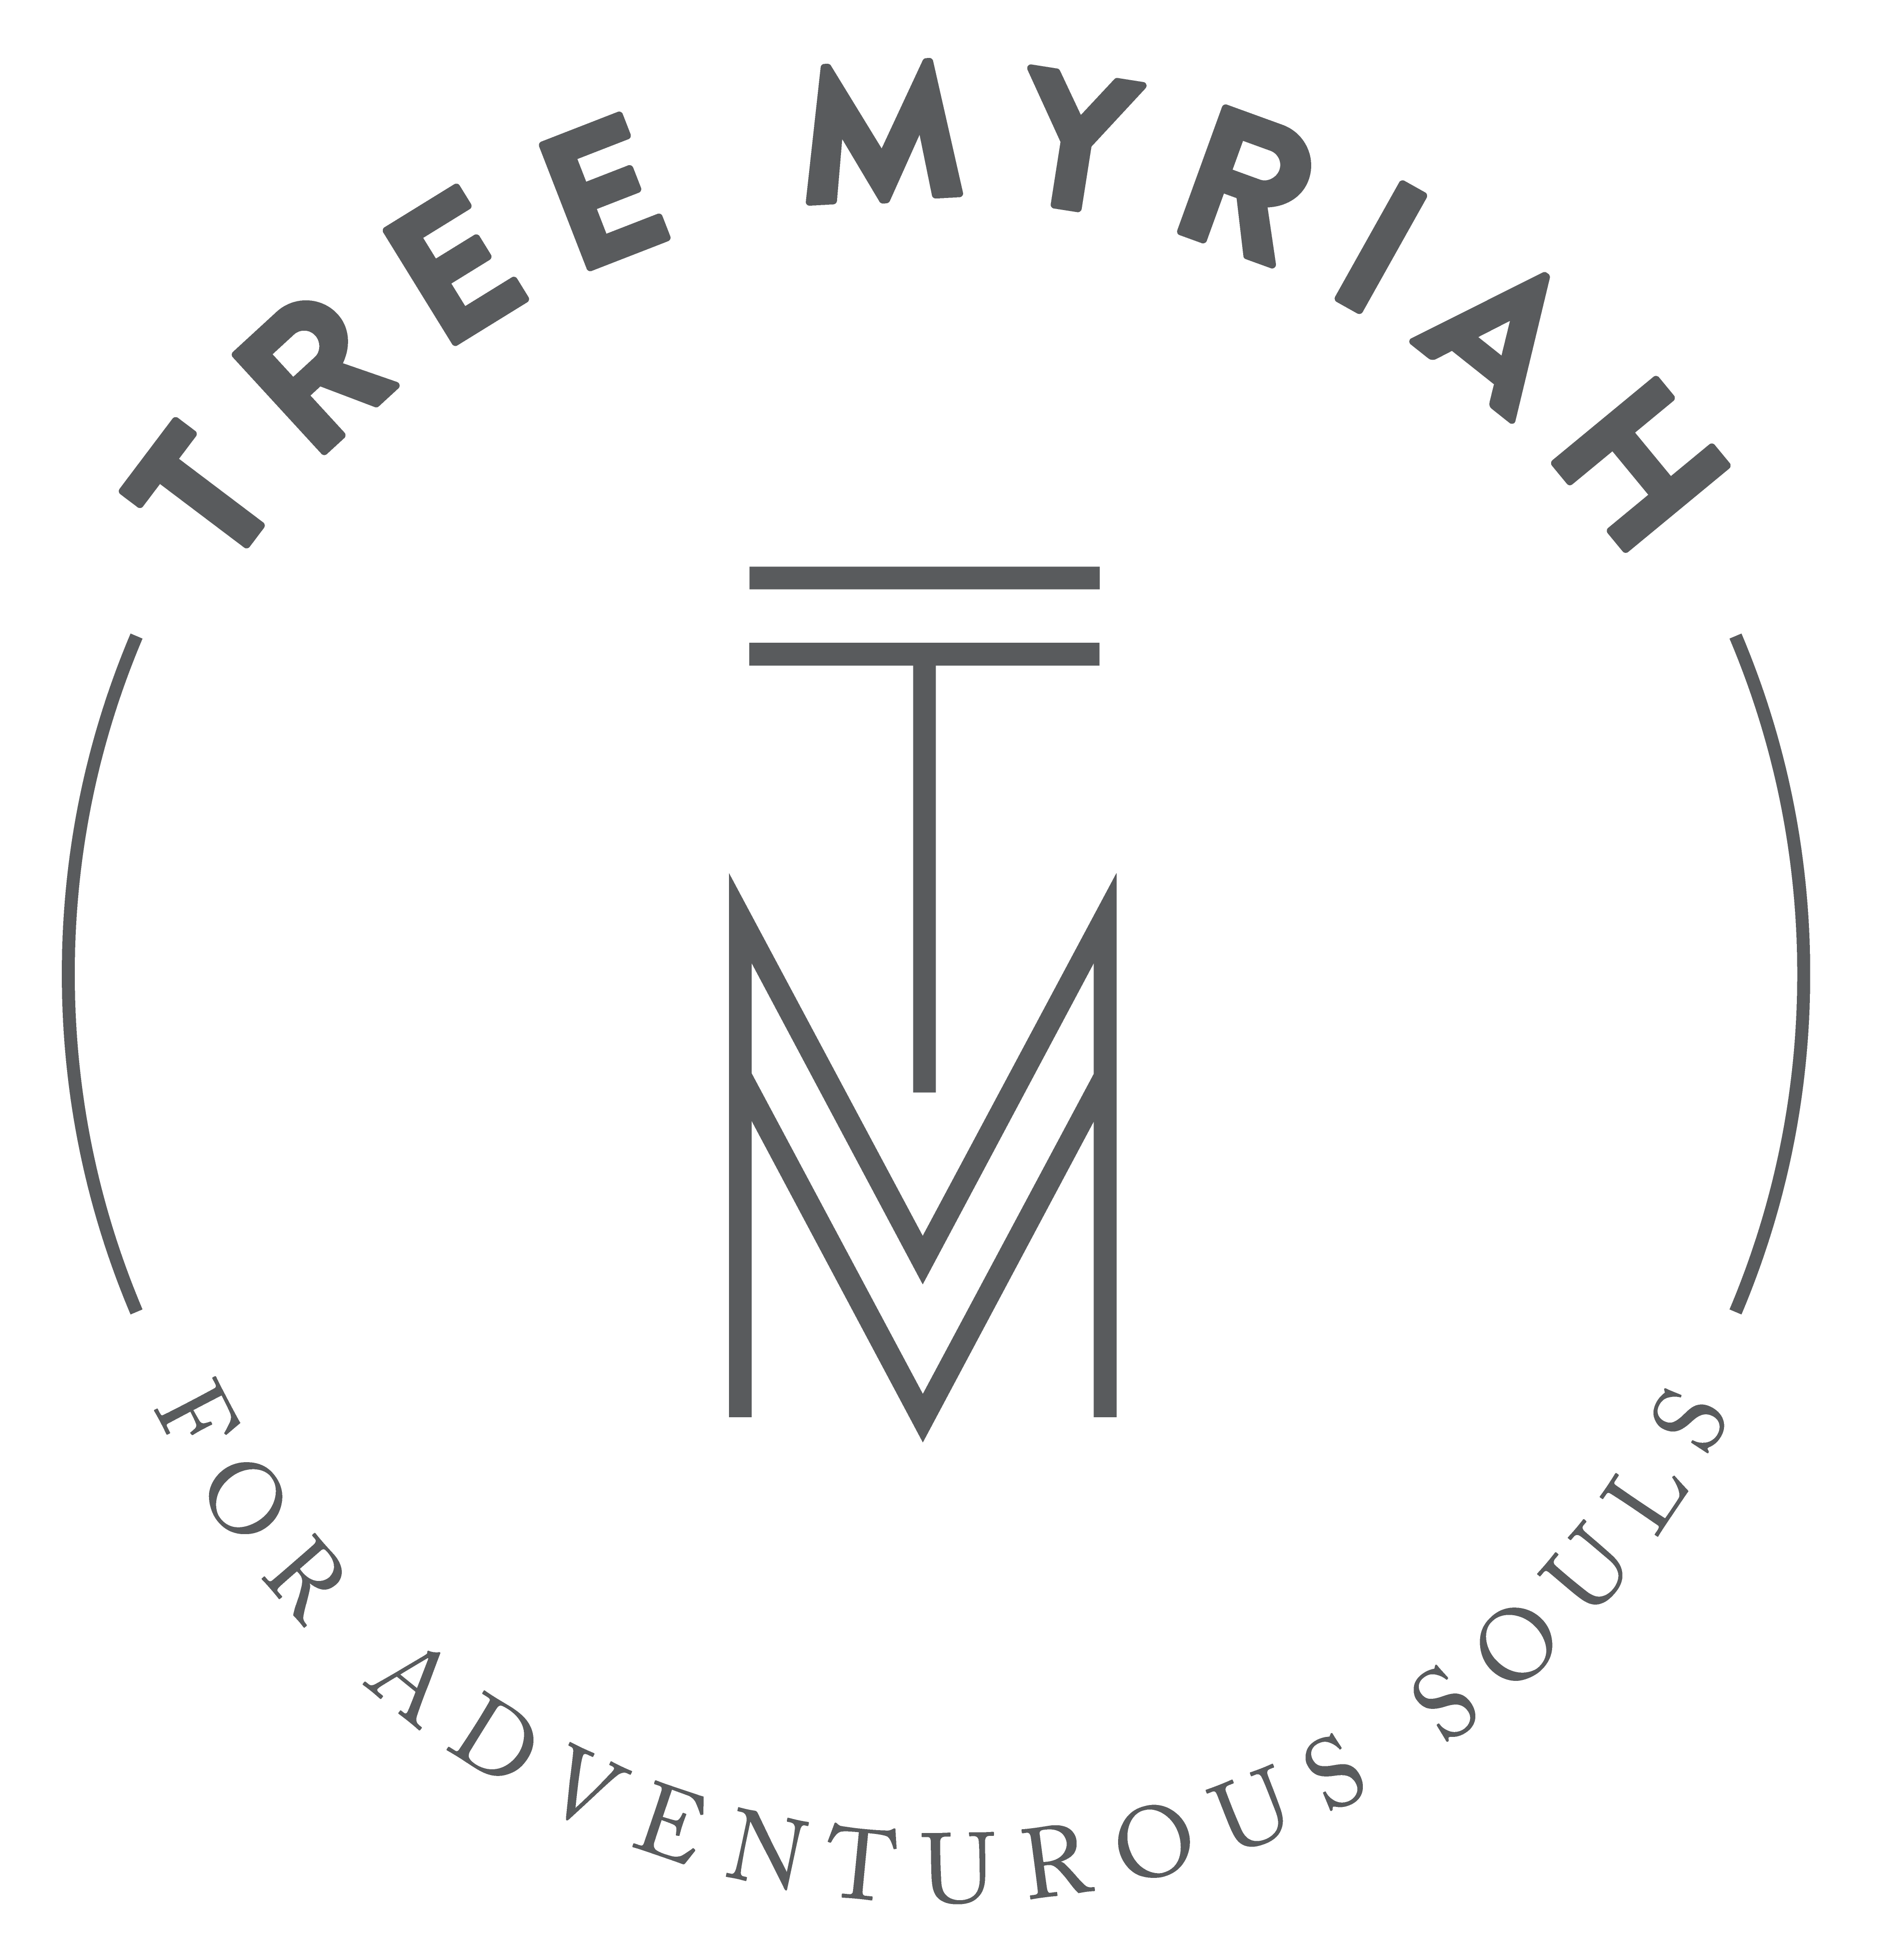 Tree Myriah